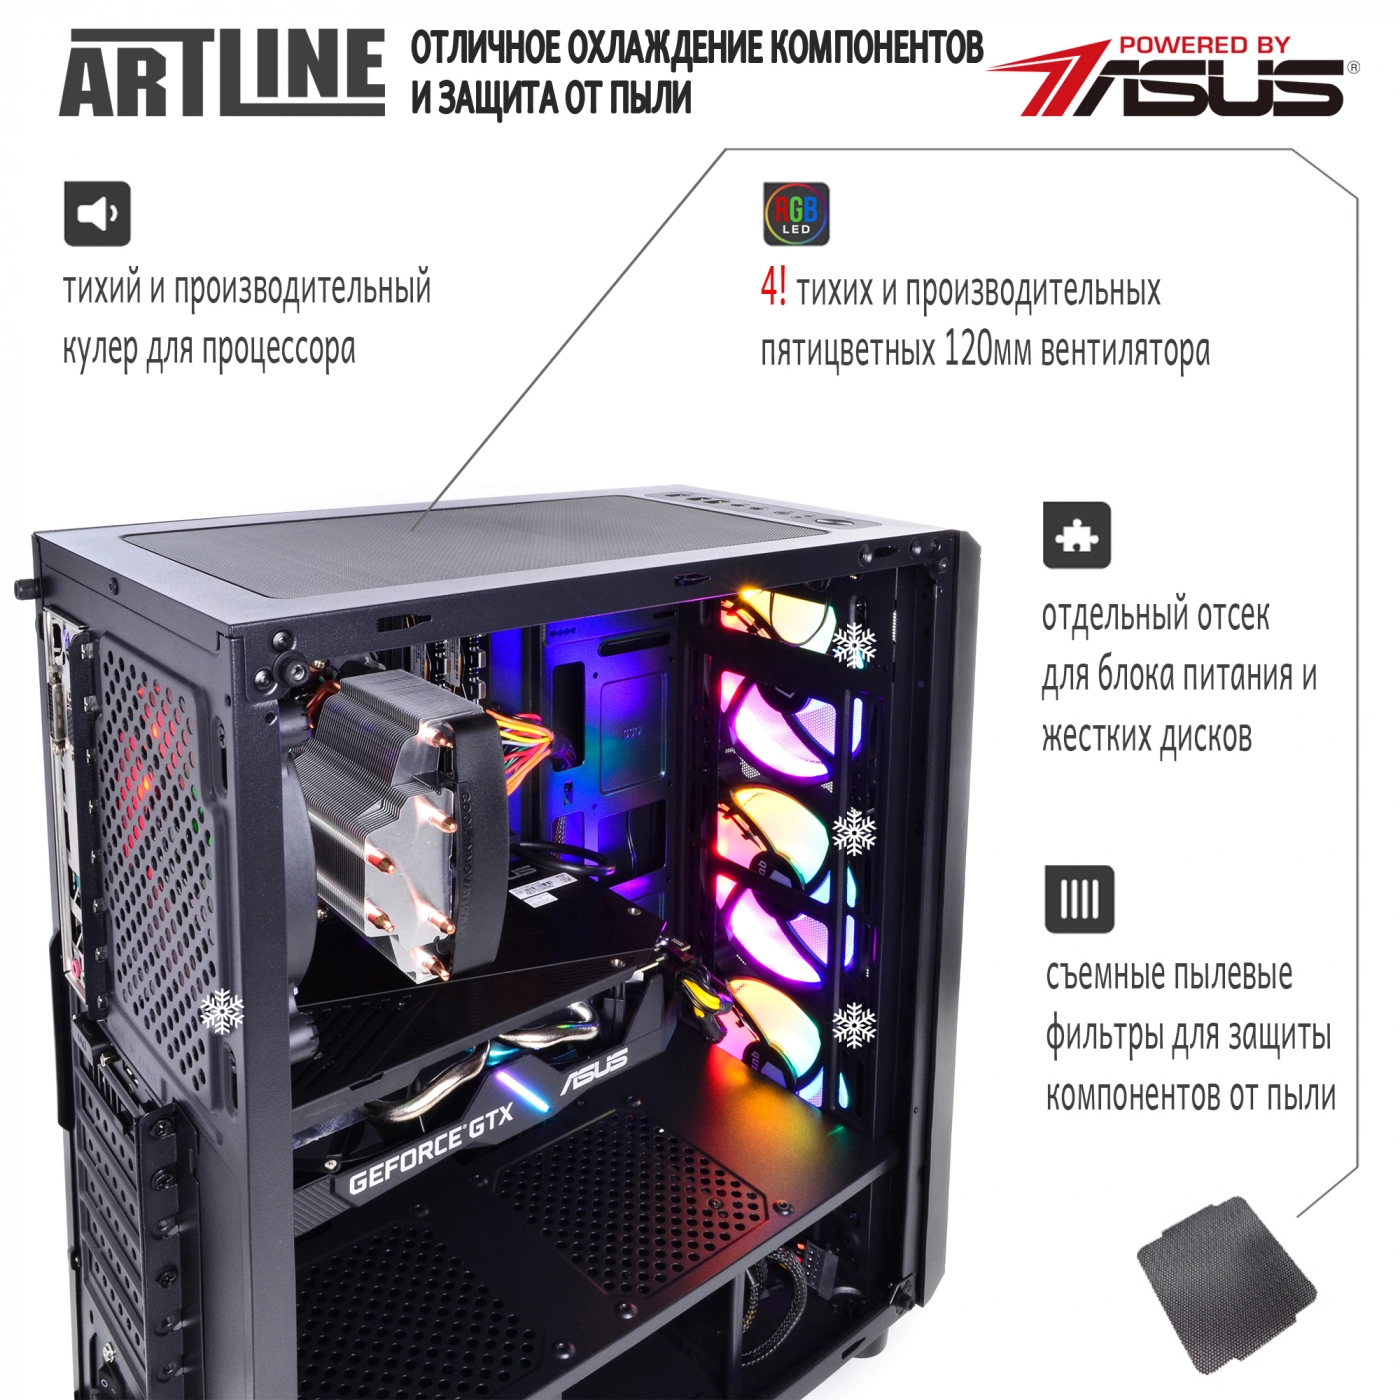 Купить Компьютер ARTLINE Gaming X39v43 - фото 3